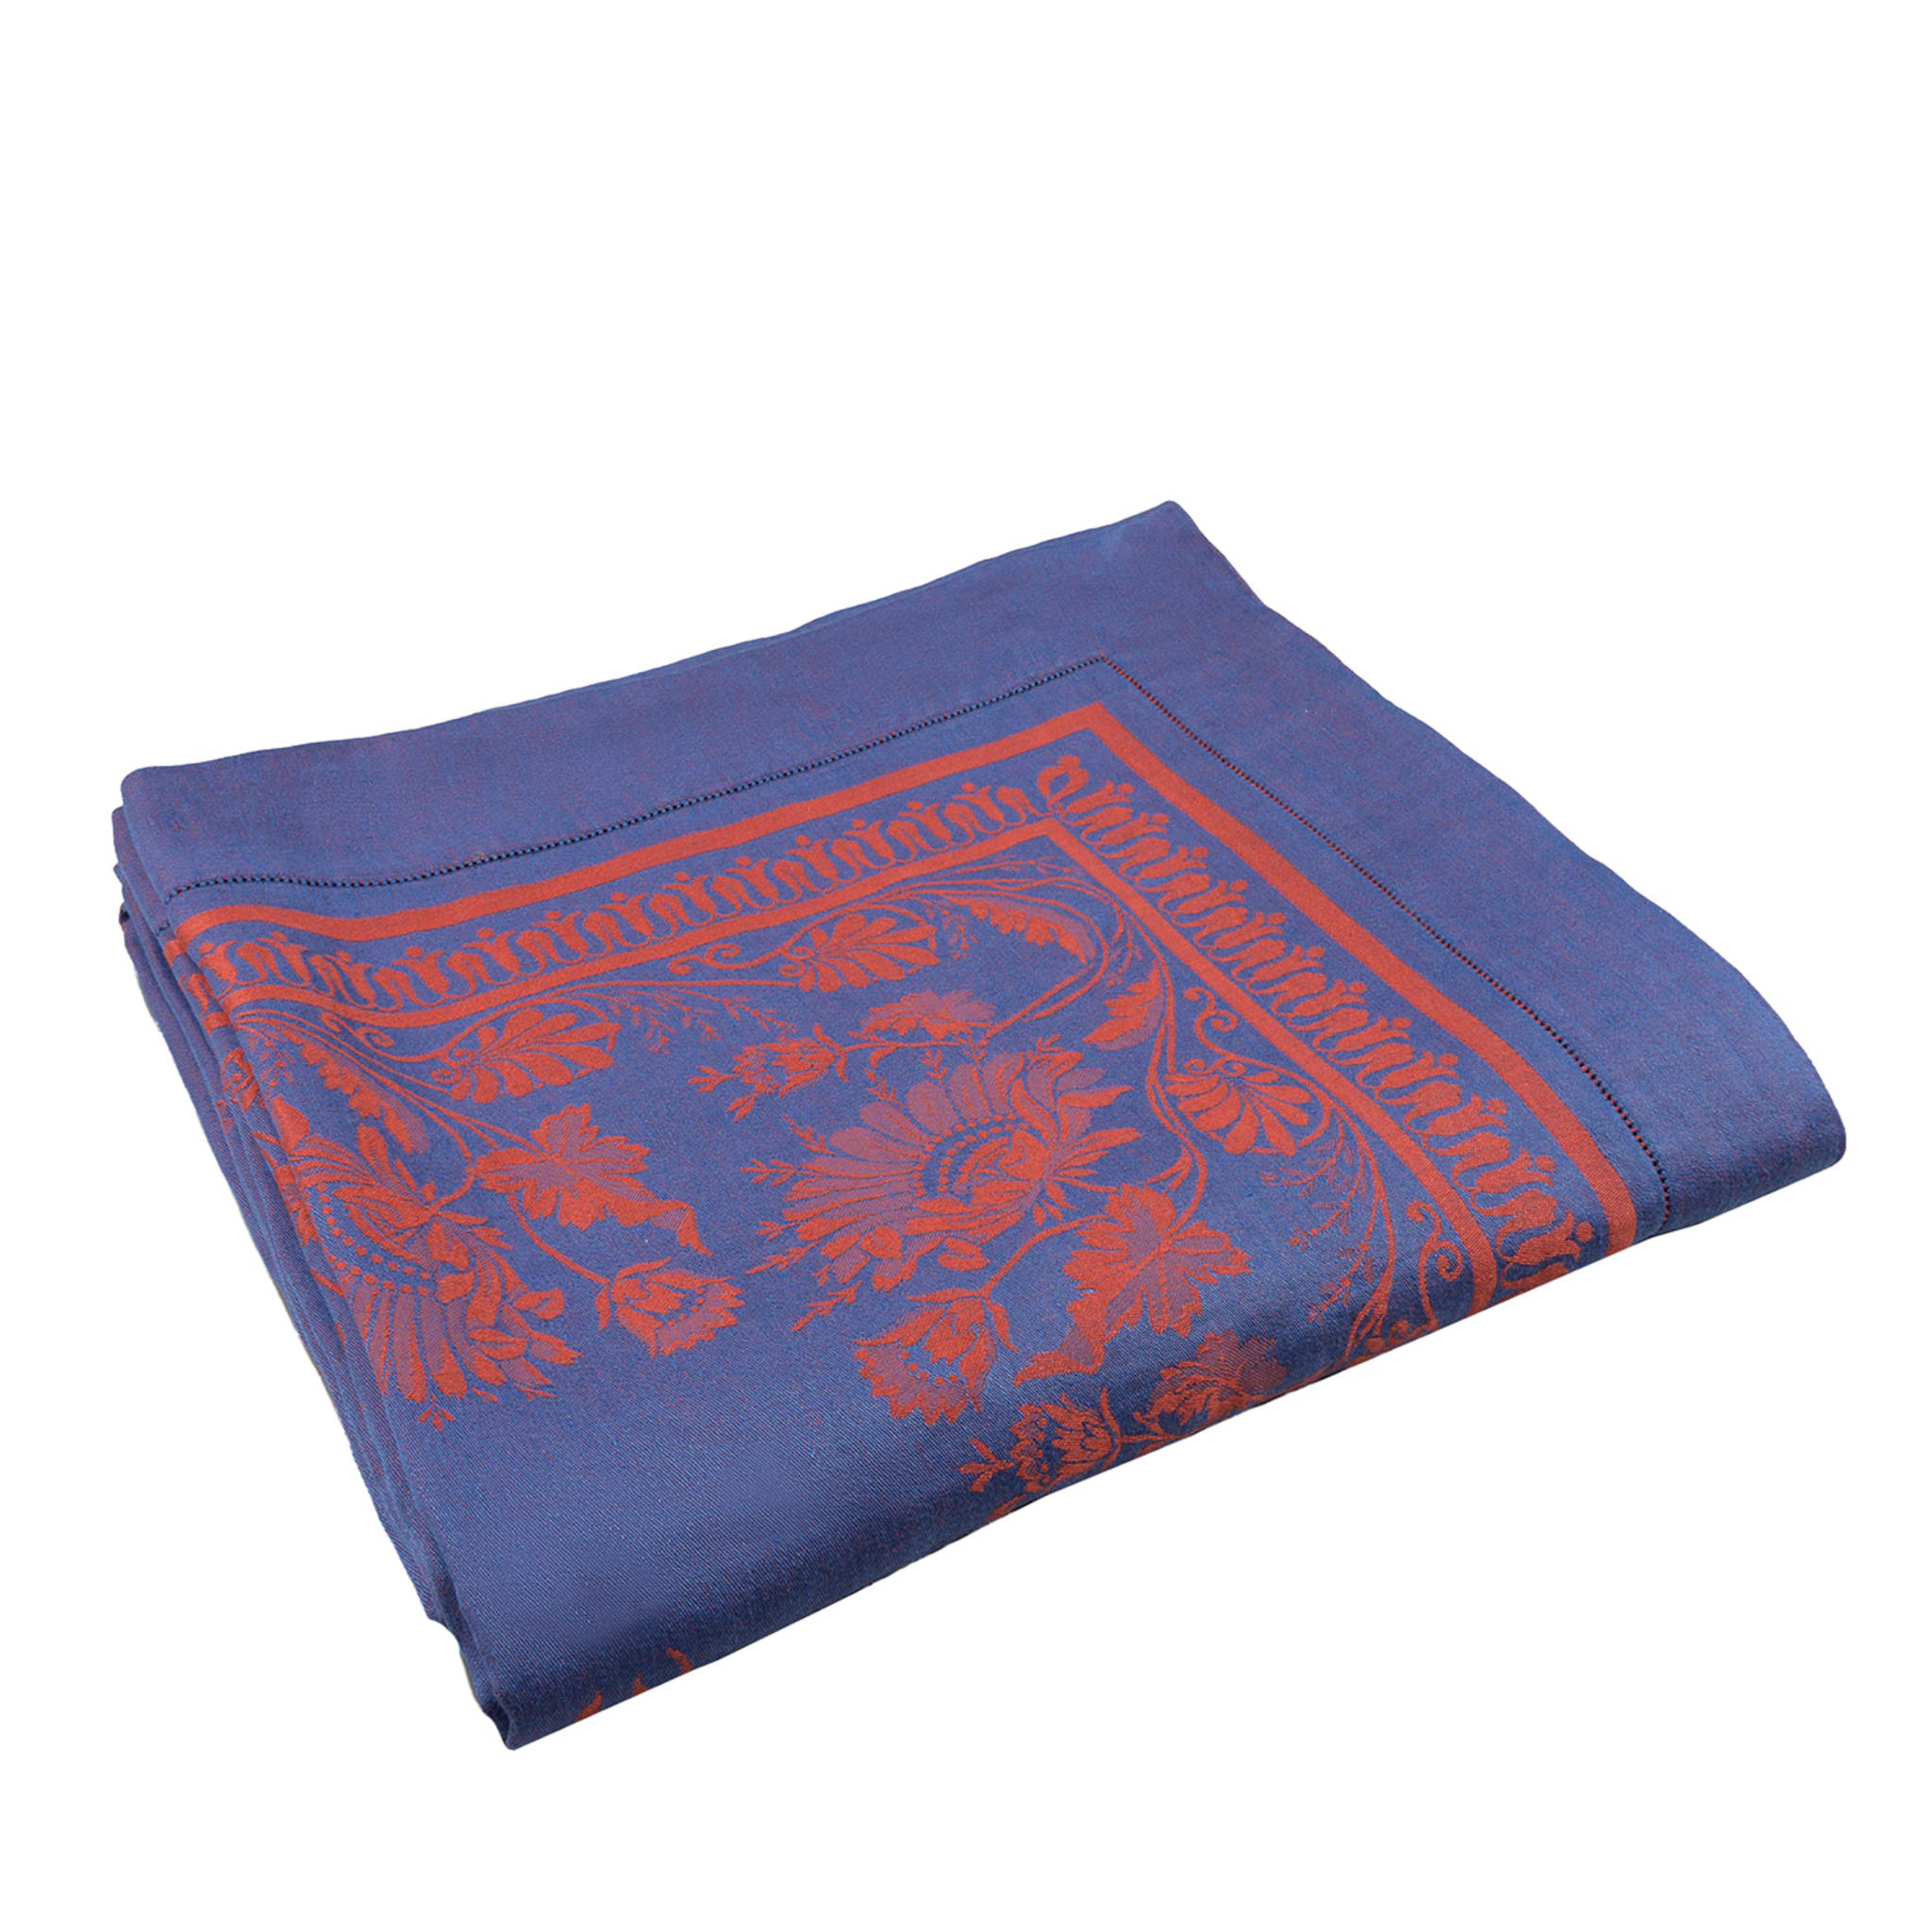 Giardino Italiano Marsala-Red & Blue Tablecloth - Main view